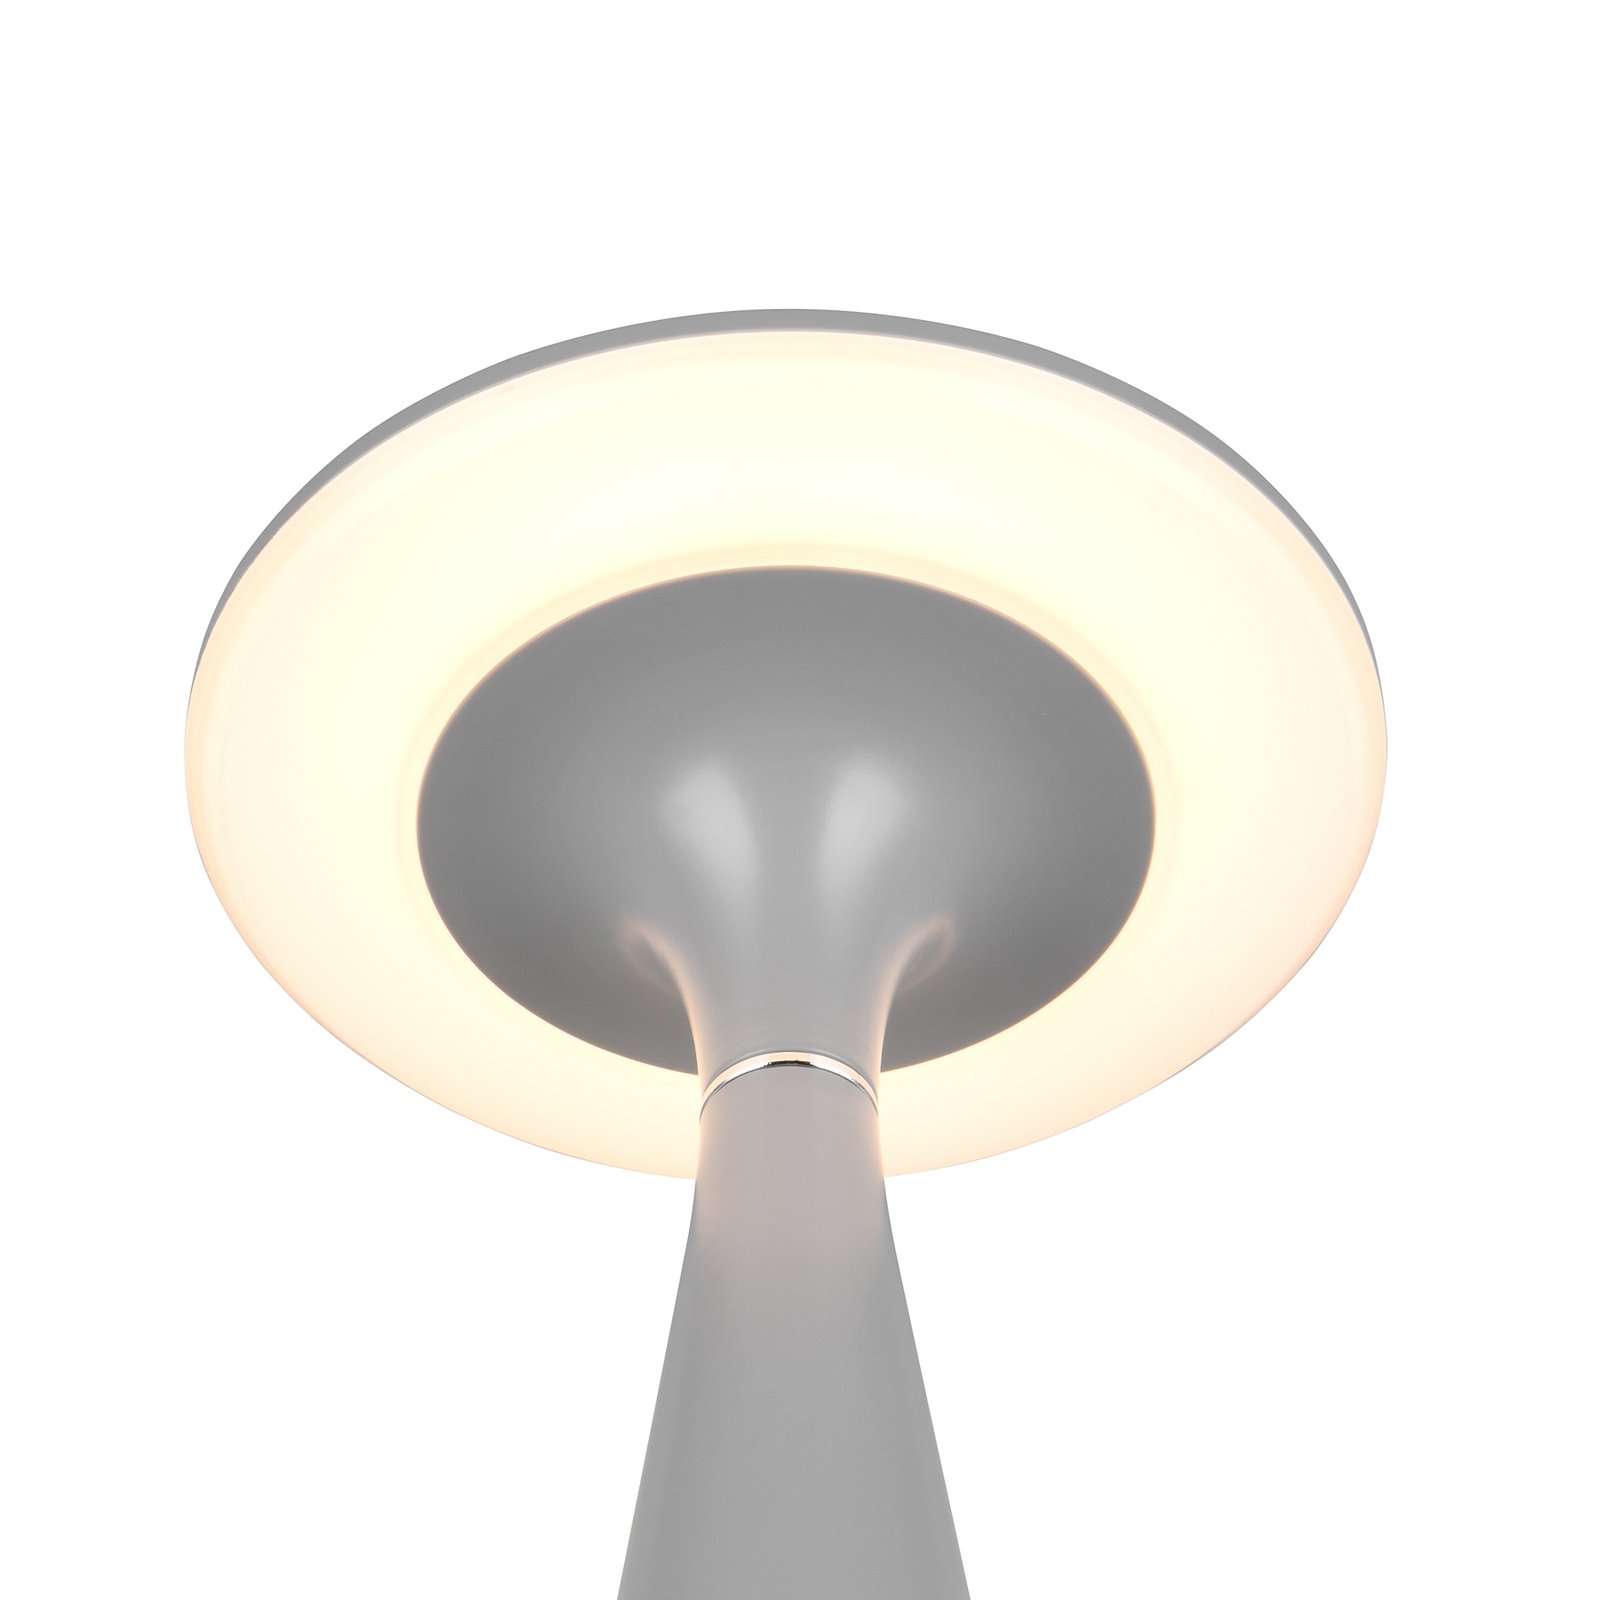 Torrez LED oppladbar bordlampe, grå, høyde 28,5 cm, CCT